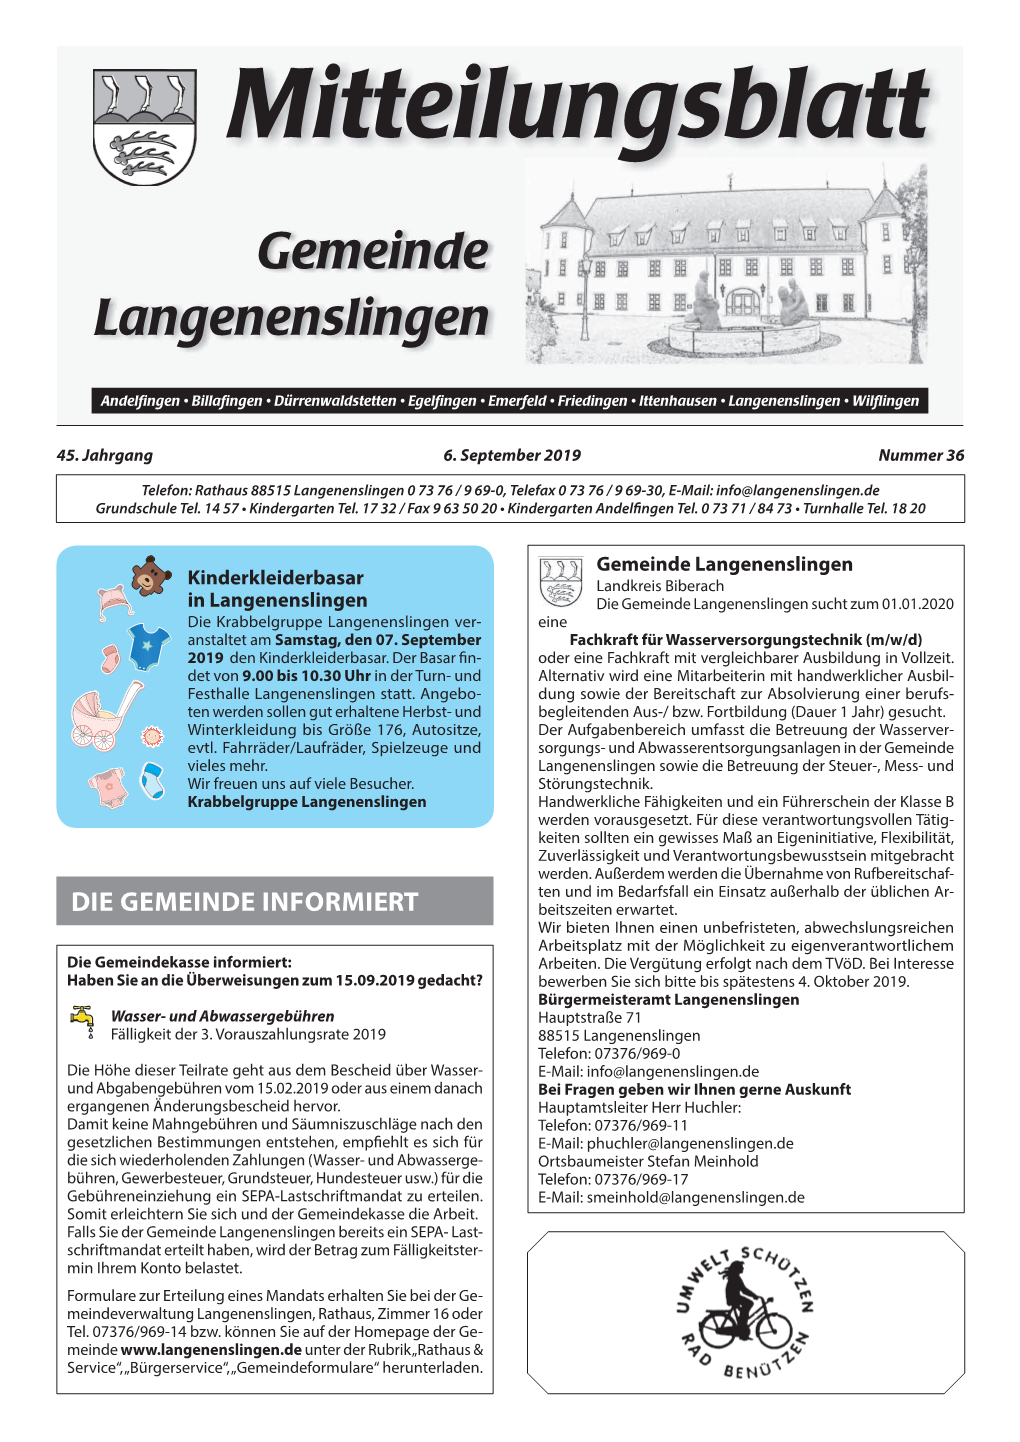 Mitteilungsblatt Langenenslingen KW 36 / 2019